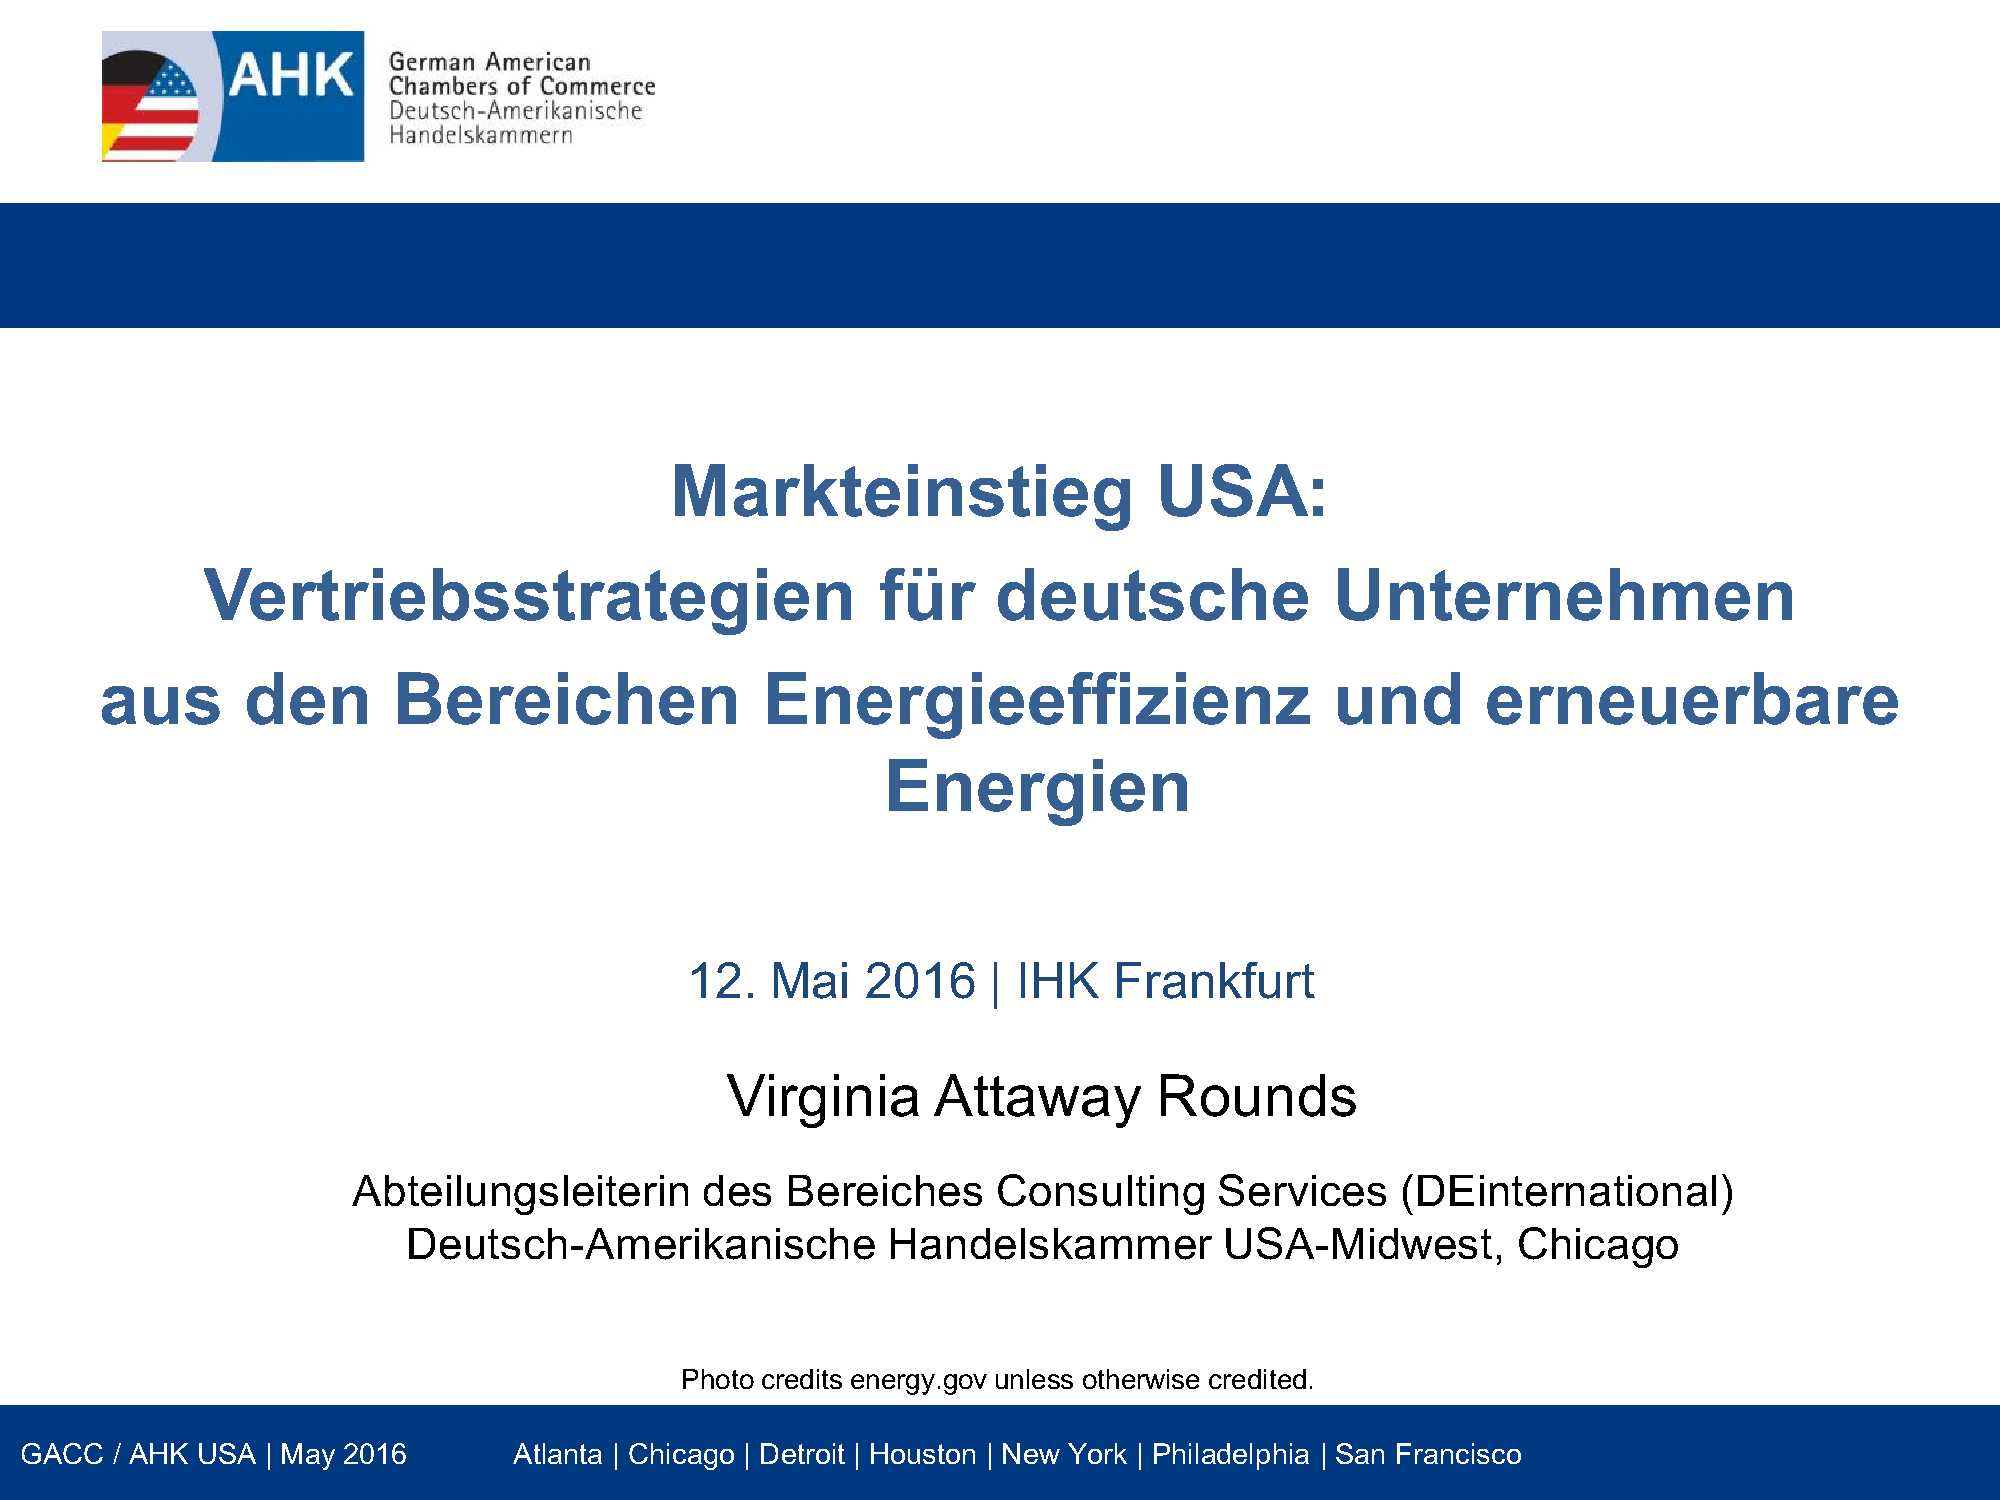 Markteinstieg USA - Vertriebsstrategien für deutsche Unternehmen aus den Bereichen Energieeffizienz und erneuerbare Energien